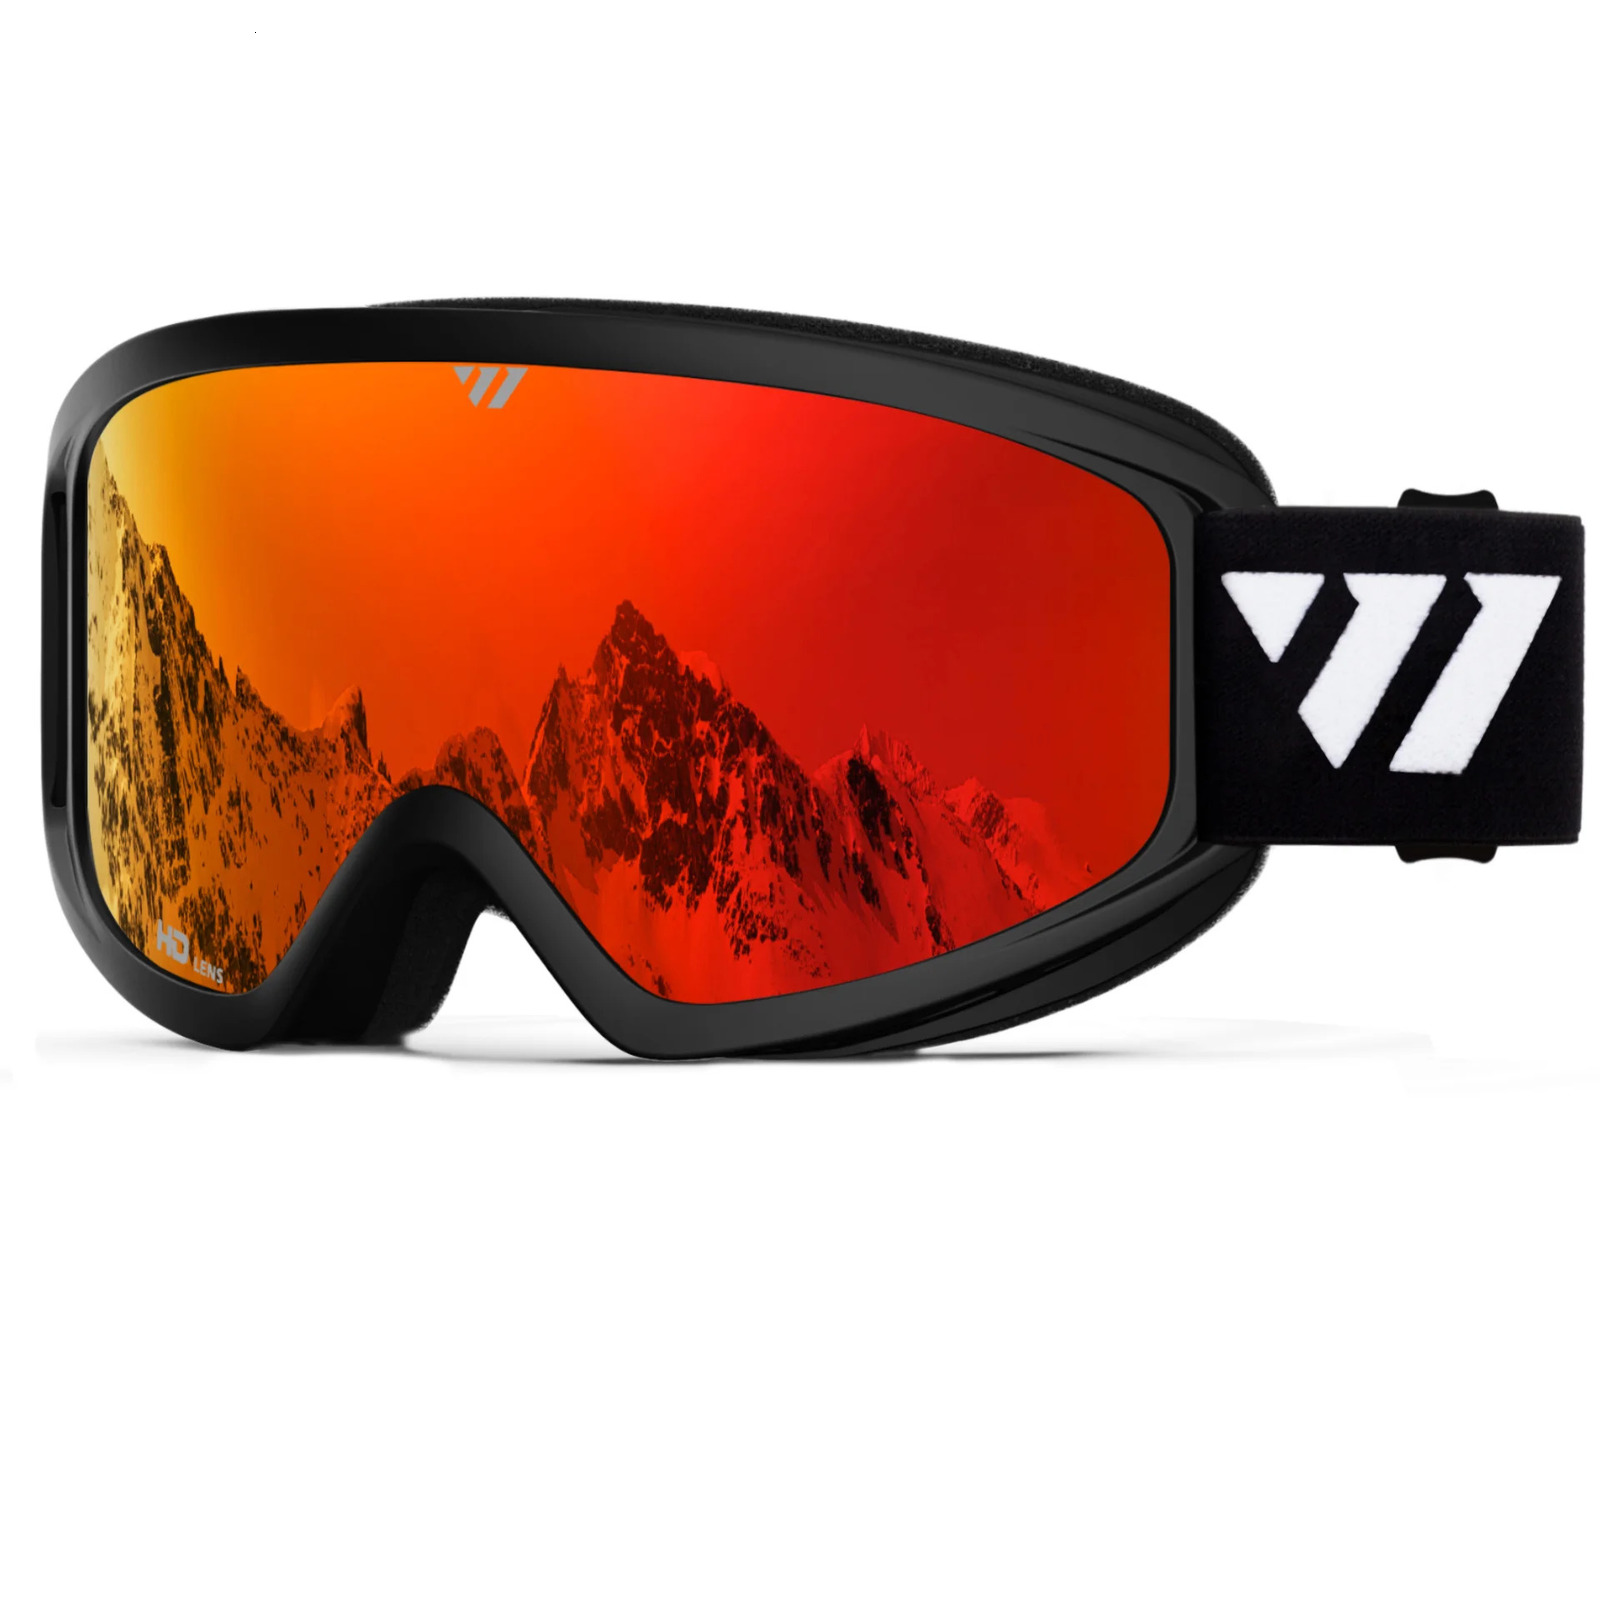 Juli Brand Professional Ski Schutzbrille Doppelschichten Objektiv Anti-Fog UV400 Ski Gläses Ski-Snowboardbrille Waldhlerie Frauen Frauen W1 231221